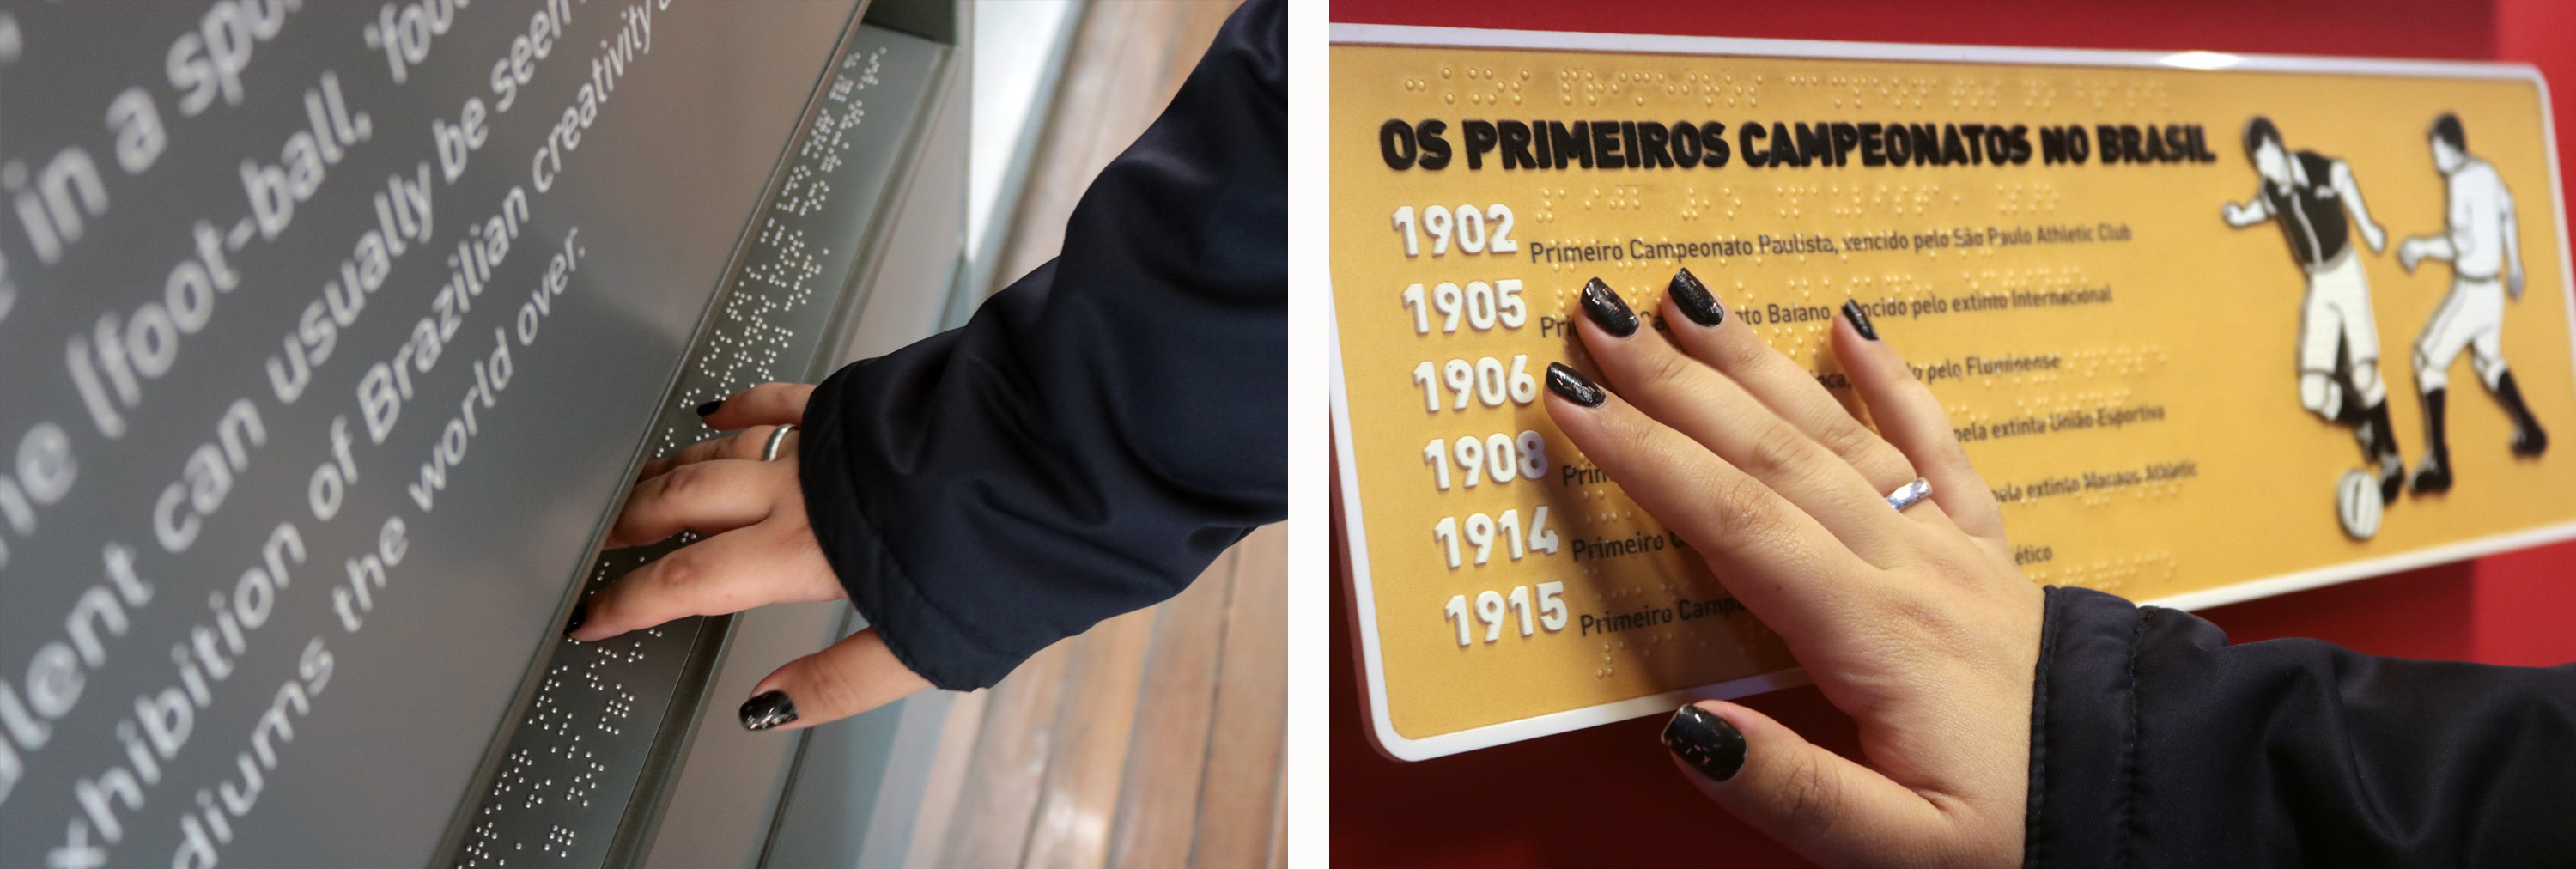 Descrição da imagem: duas fotos da mão de Carla tocando placas em braille do museu. Uma delas tem a imagem de dois jogadores em relevo disputando a bola.